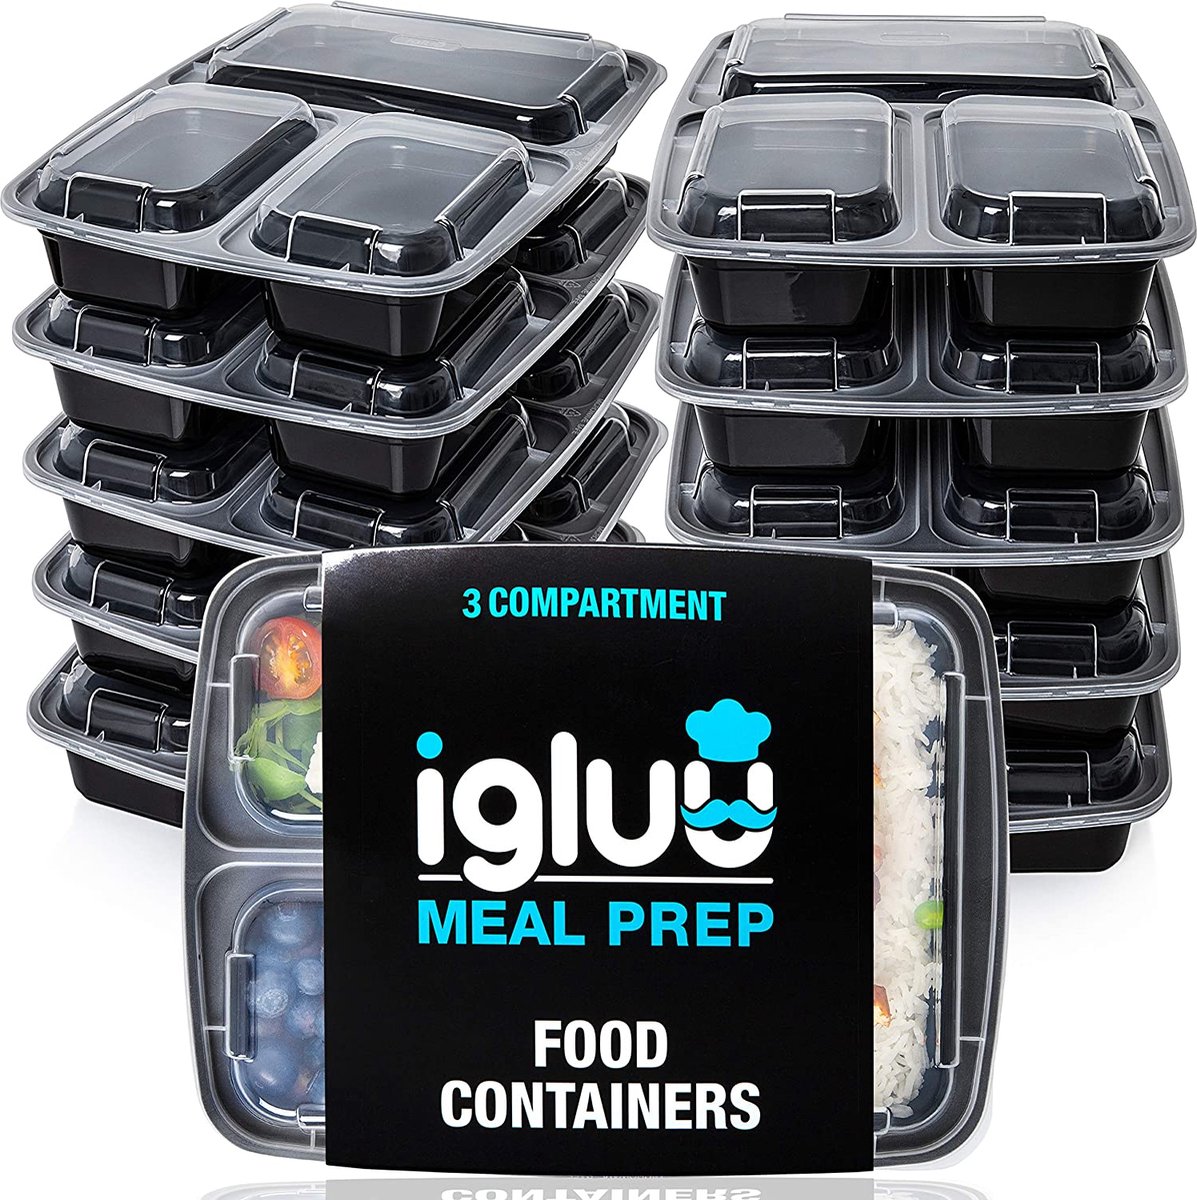 [20 Stuks] 3 Compartimenten BPA Vrij Herbruikbare Meal Prep Containers - Plastic Voedsel Bakjes met Luchtdichte Deksels - Magnetron, Vriezer en Vaatwasserbestendig - Stapelbare Bento Box (900 ml)